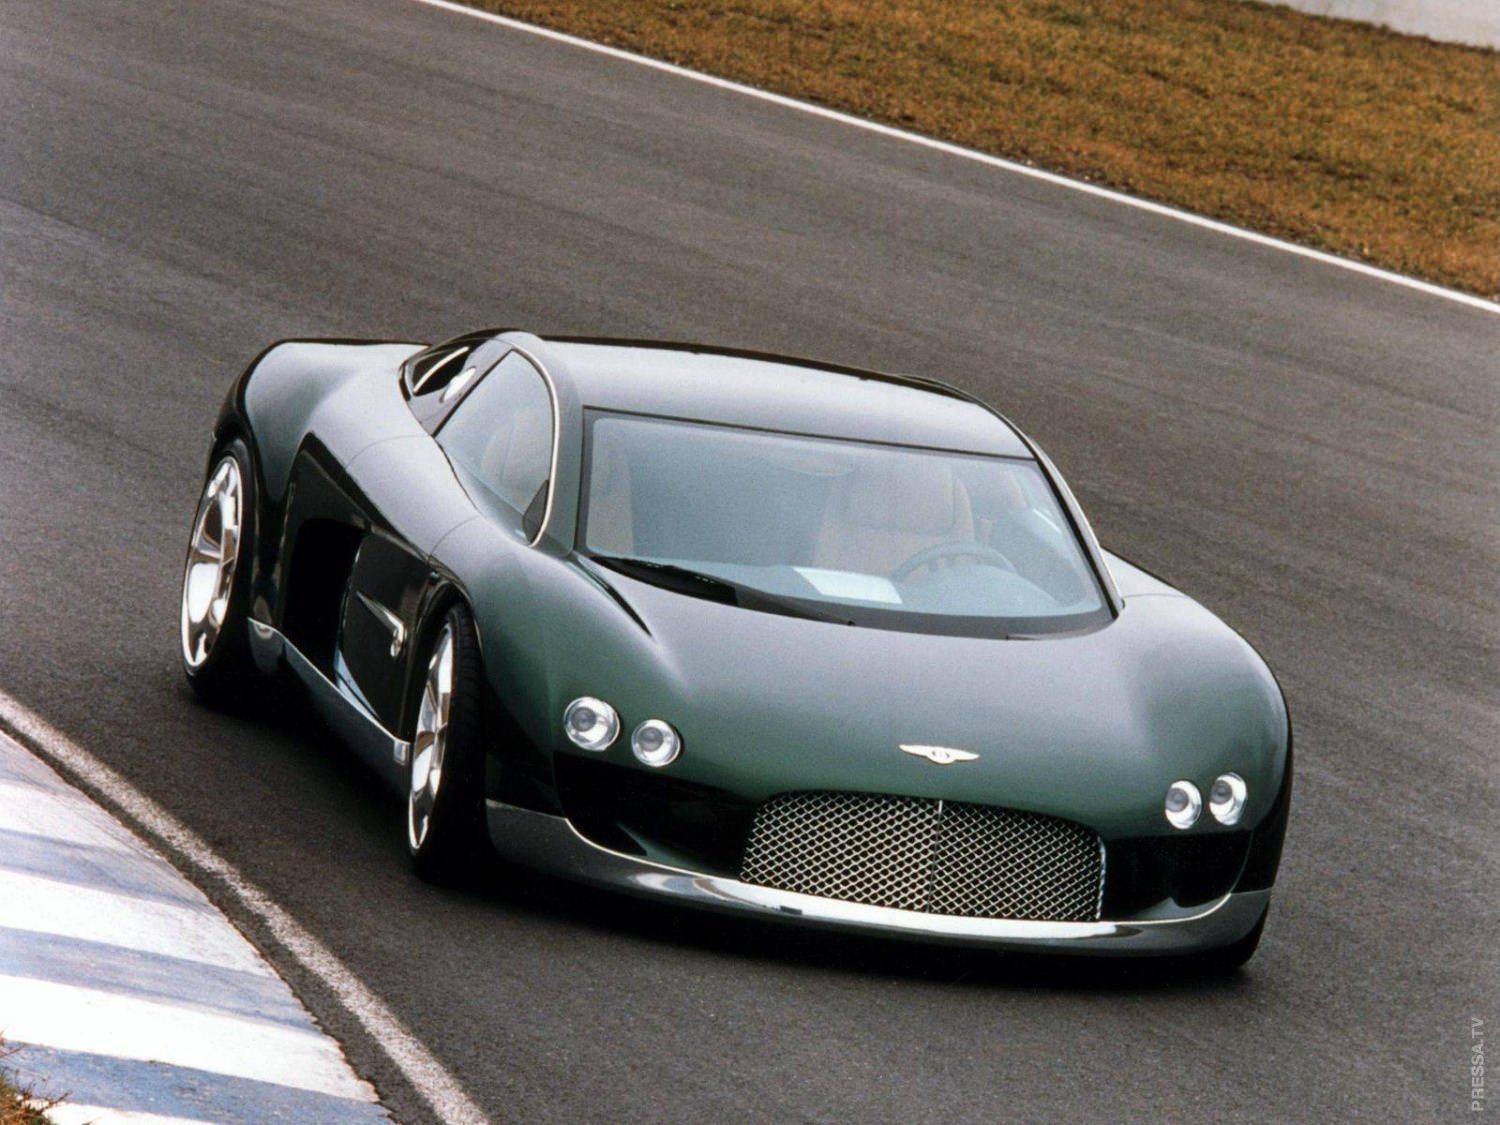 1999 Bentley Hunaudieres Concept